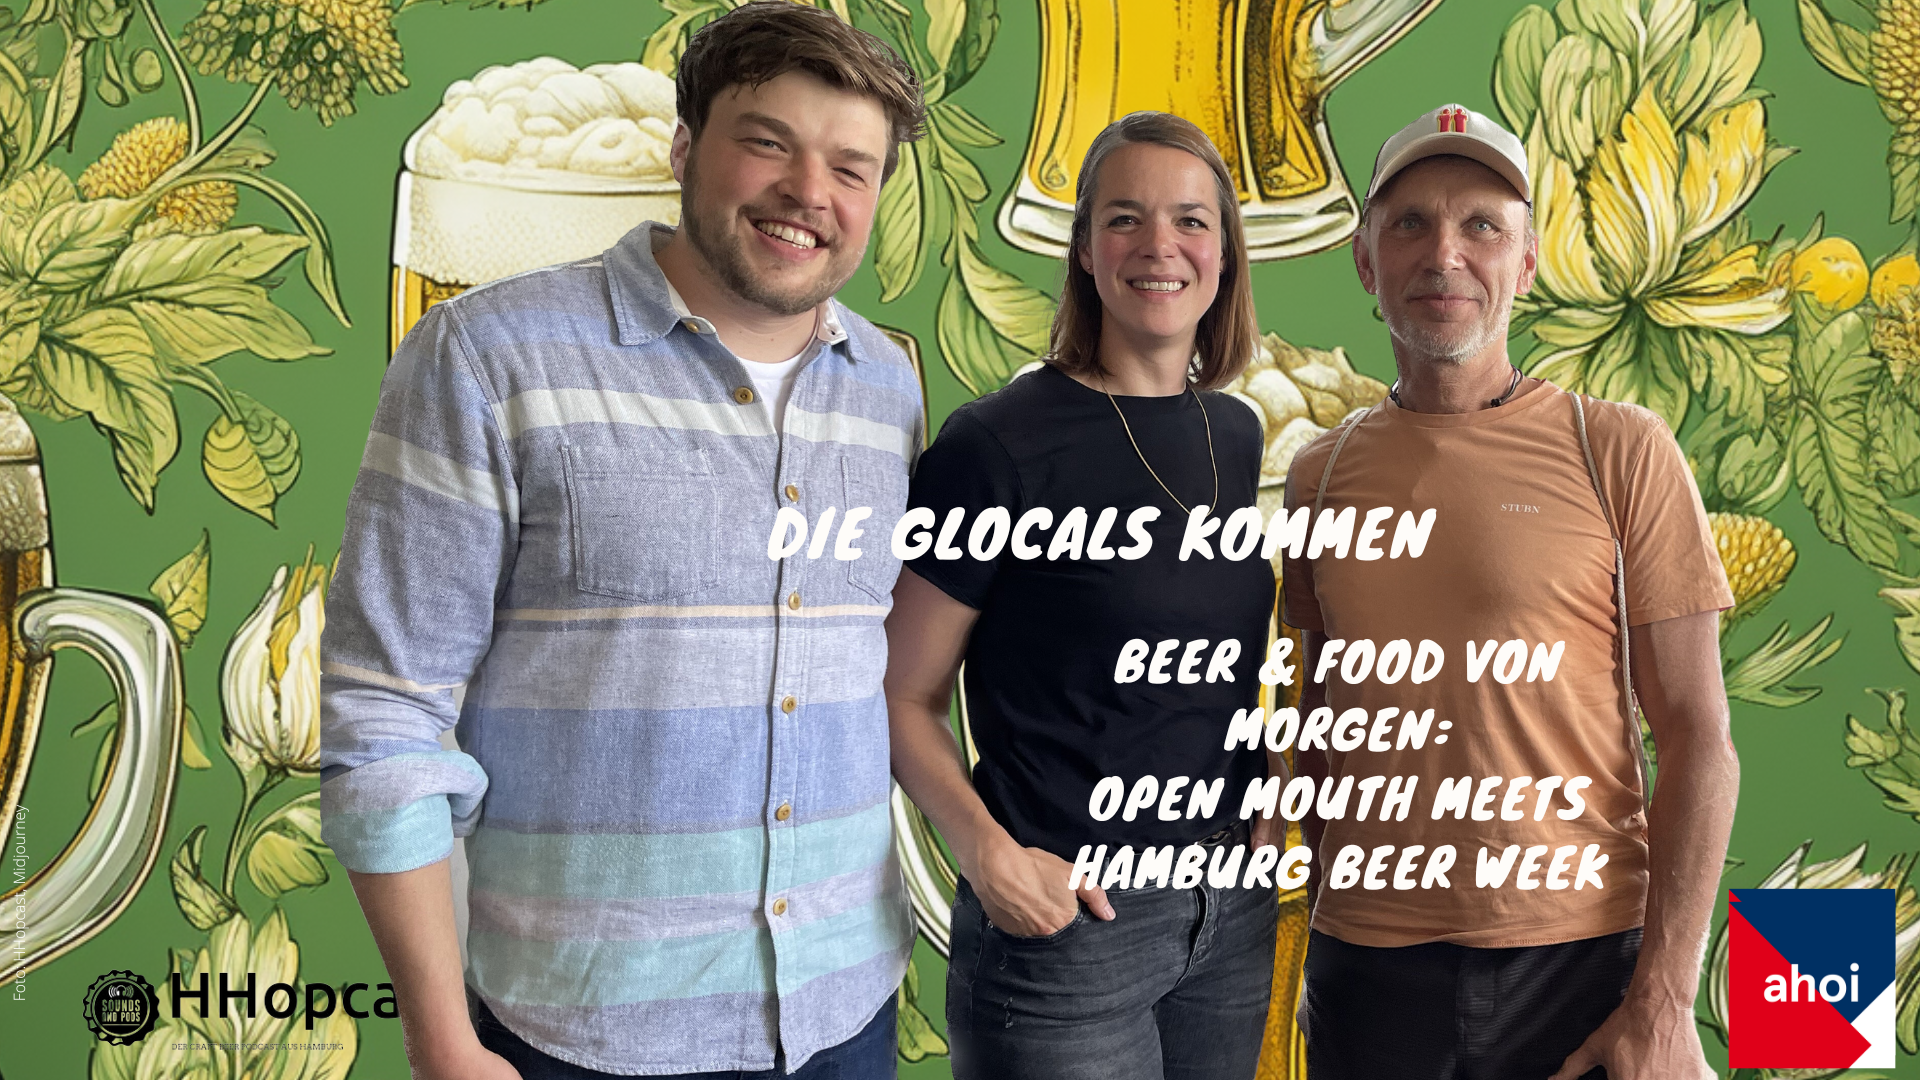 Hamburg Beer Week und Open Mouth